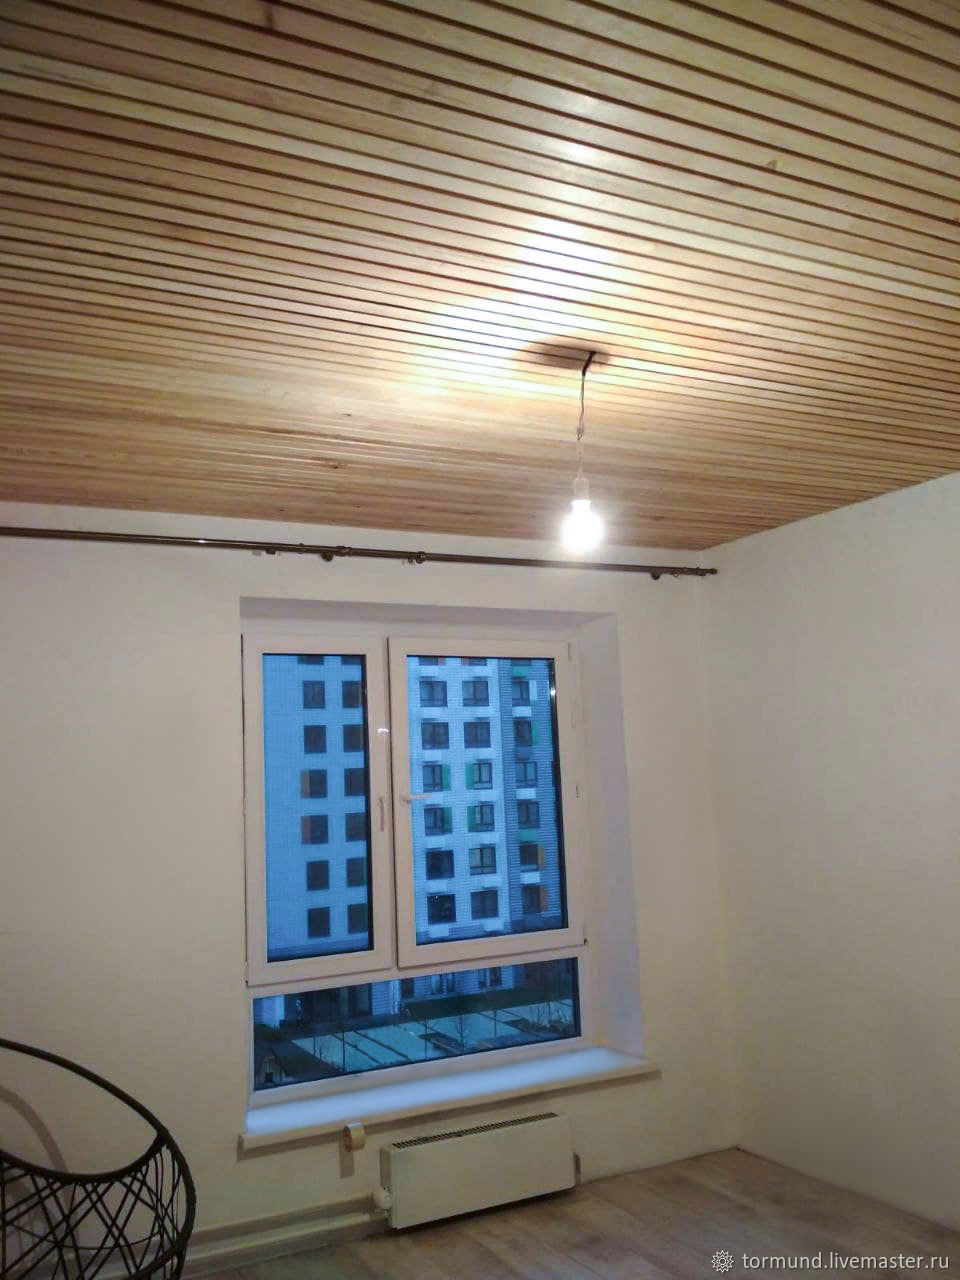 Реечные потолки в ванной комнате - особенности монтажа и выбора материалов для влажных помещений